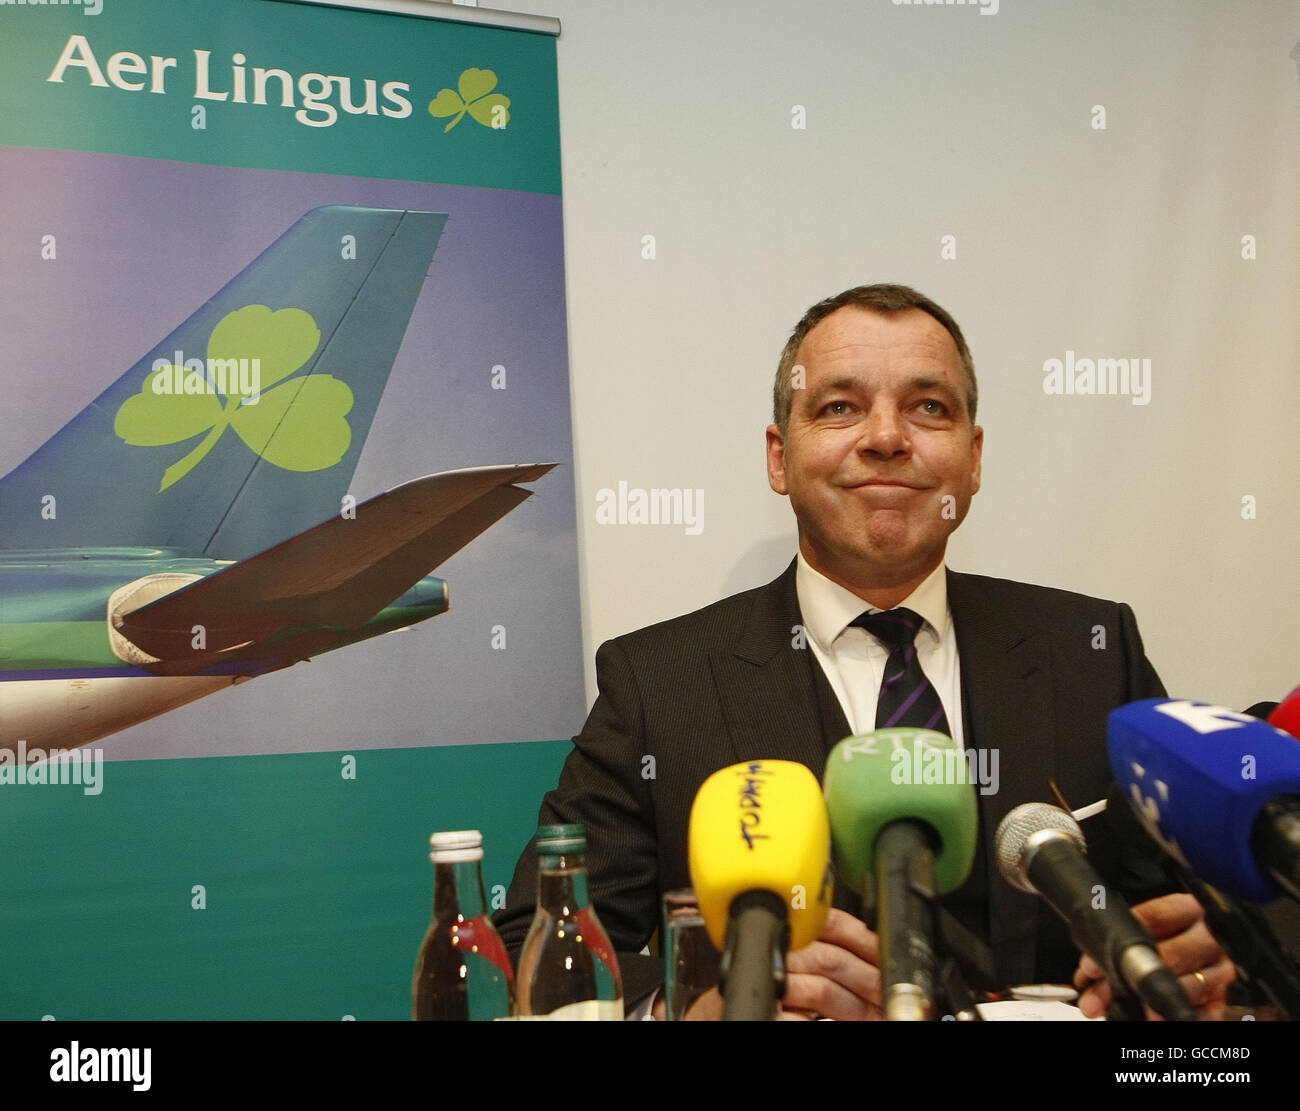 Aer Lingus-Geschäftsführer Christoph Mueller heute bei einer Pressekonferenz in Dublin. Stockfoto